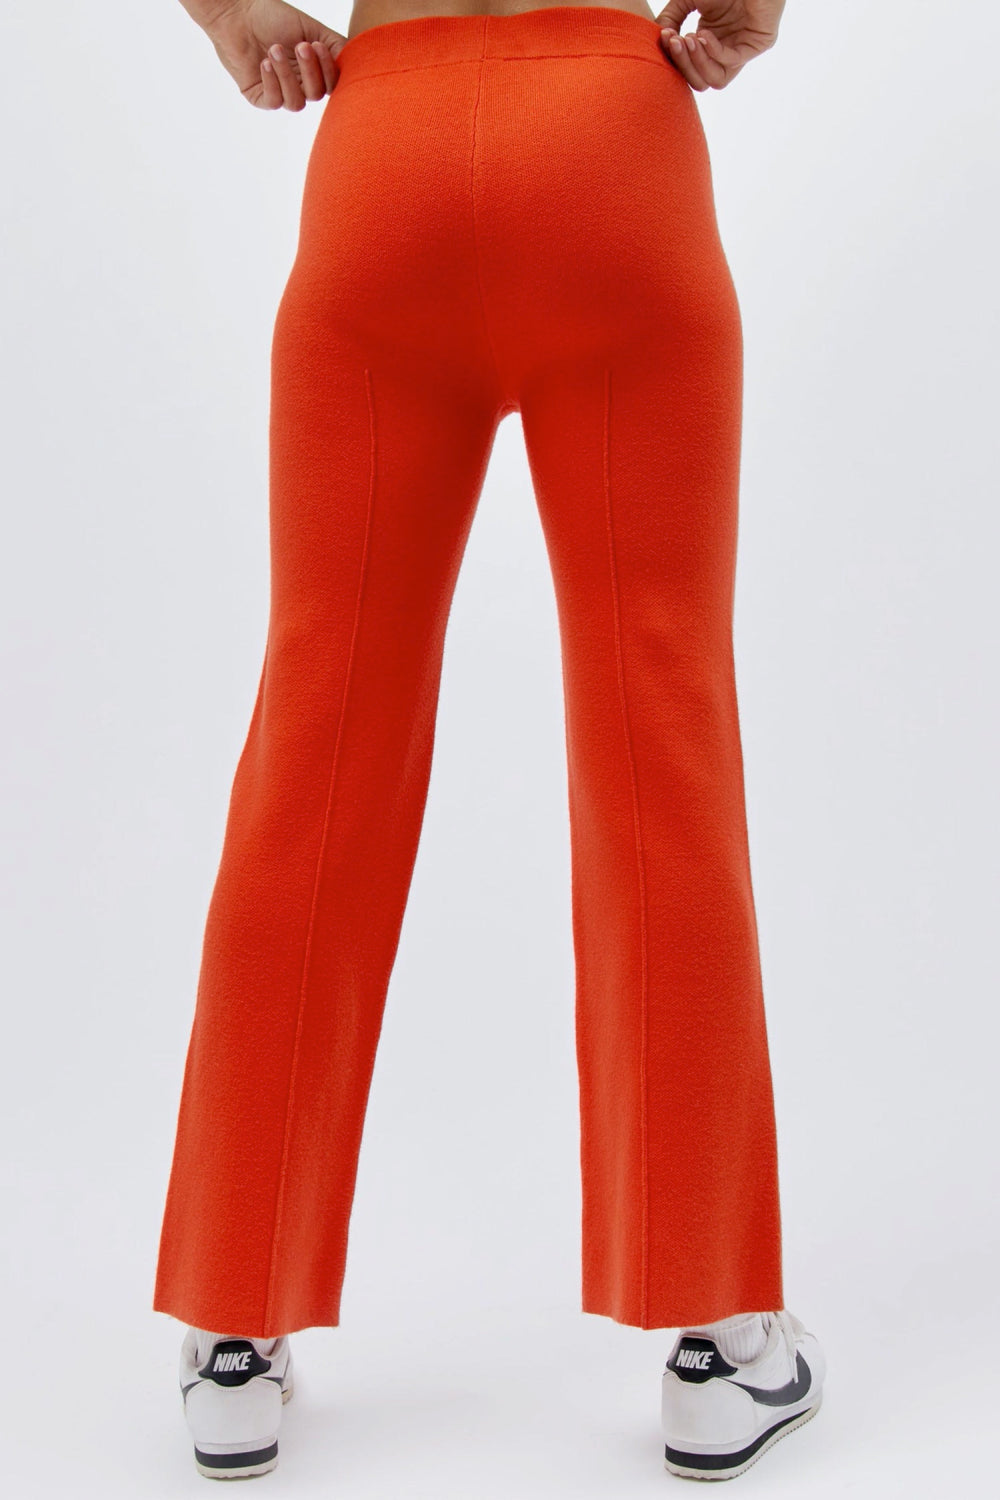 Hot Orange Pintuck Pant